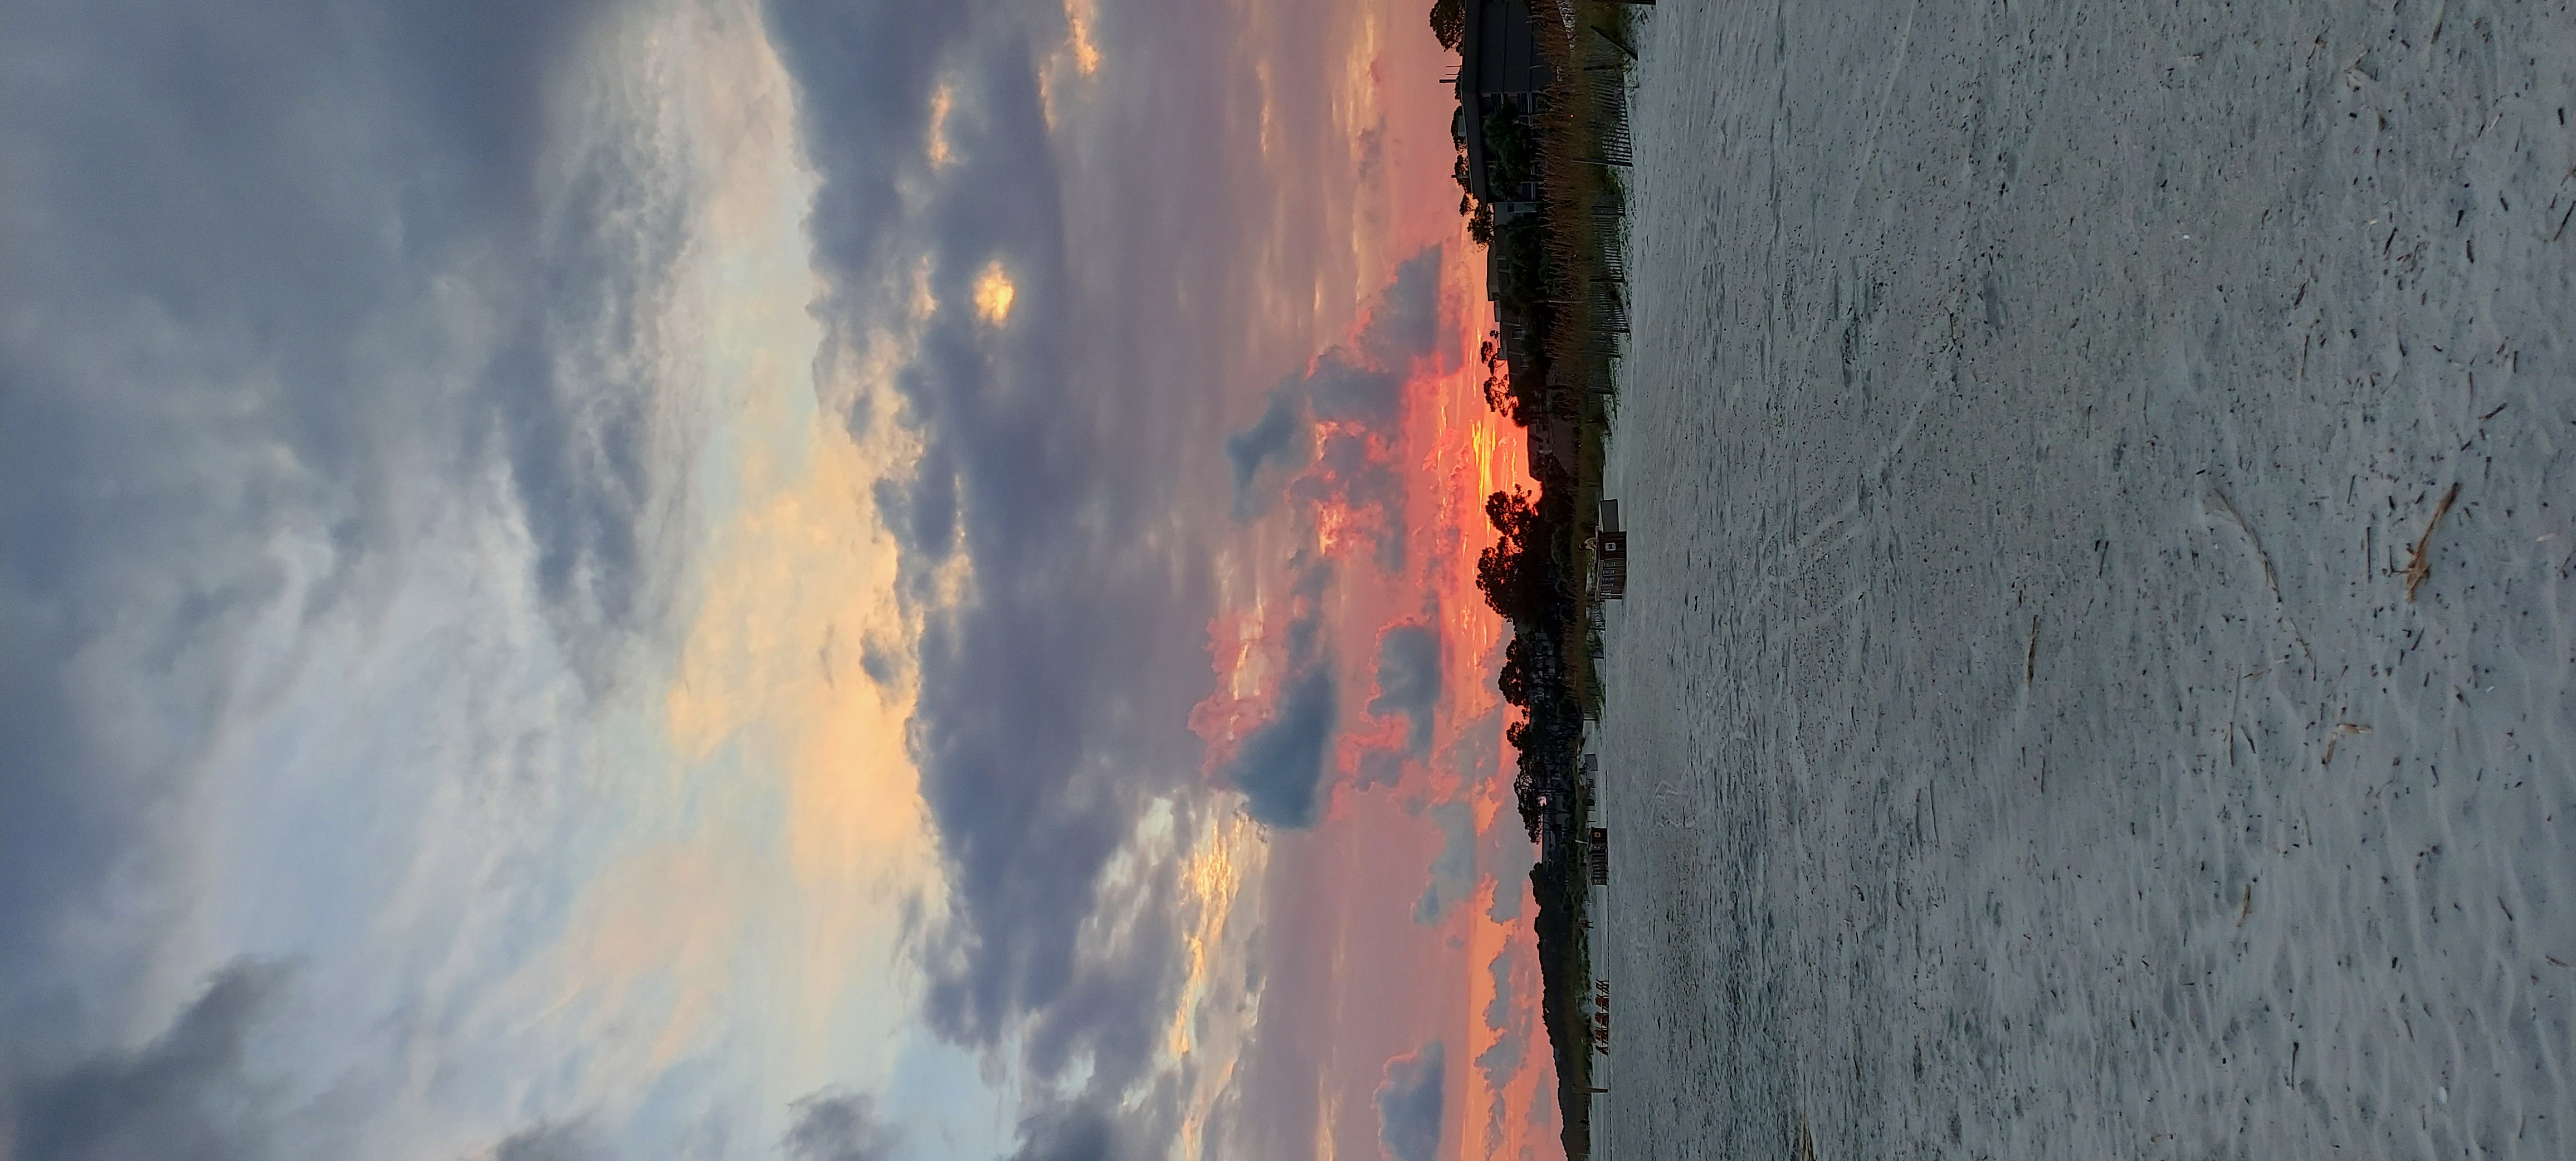 The Sunset from The beach on Hilton Head Island...